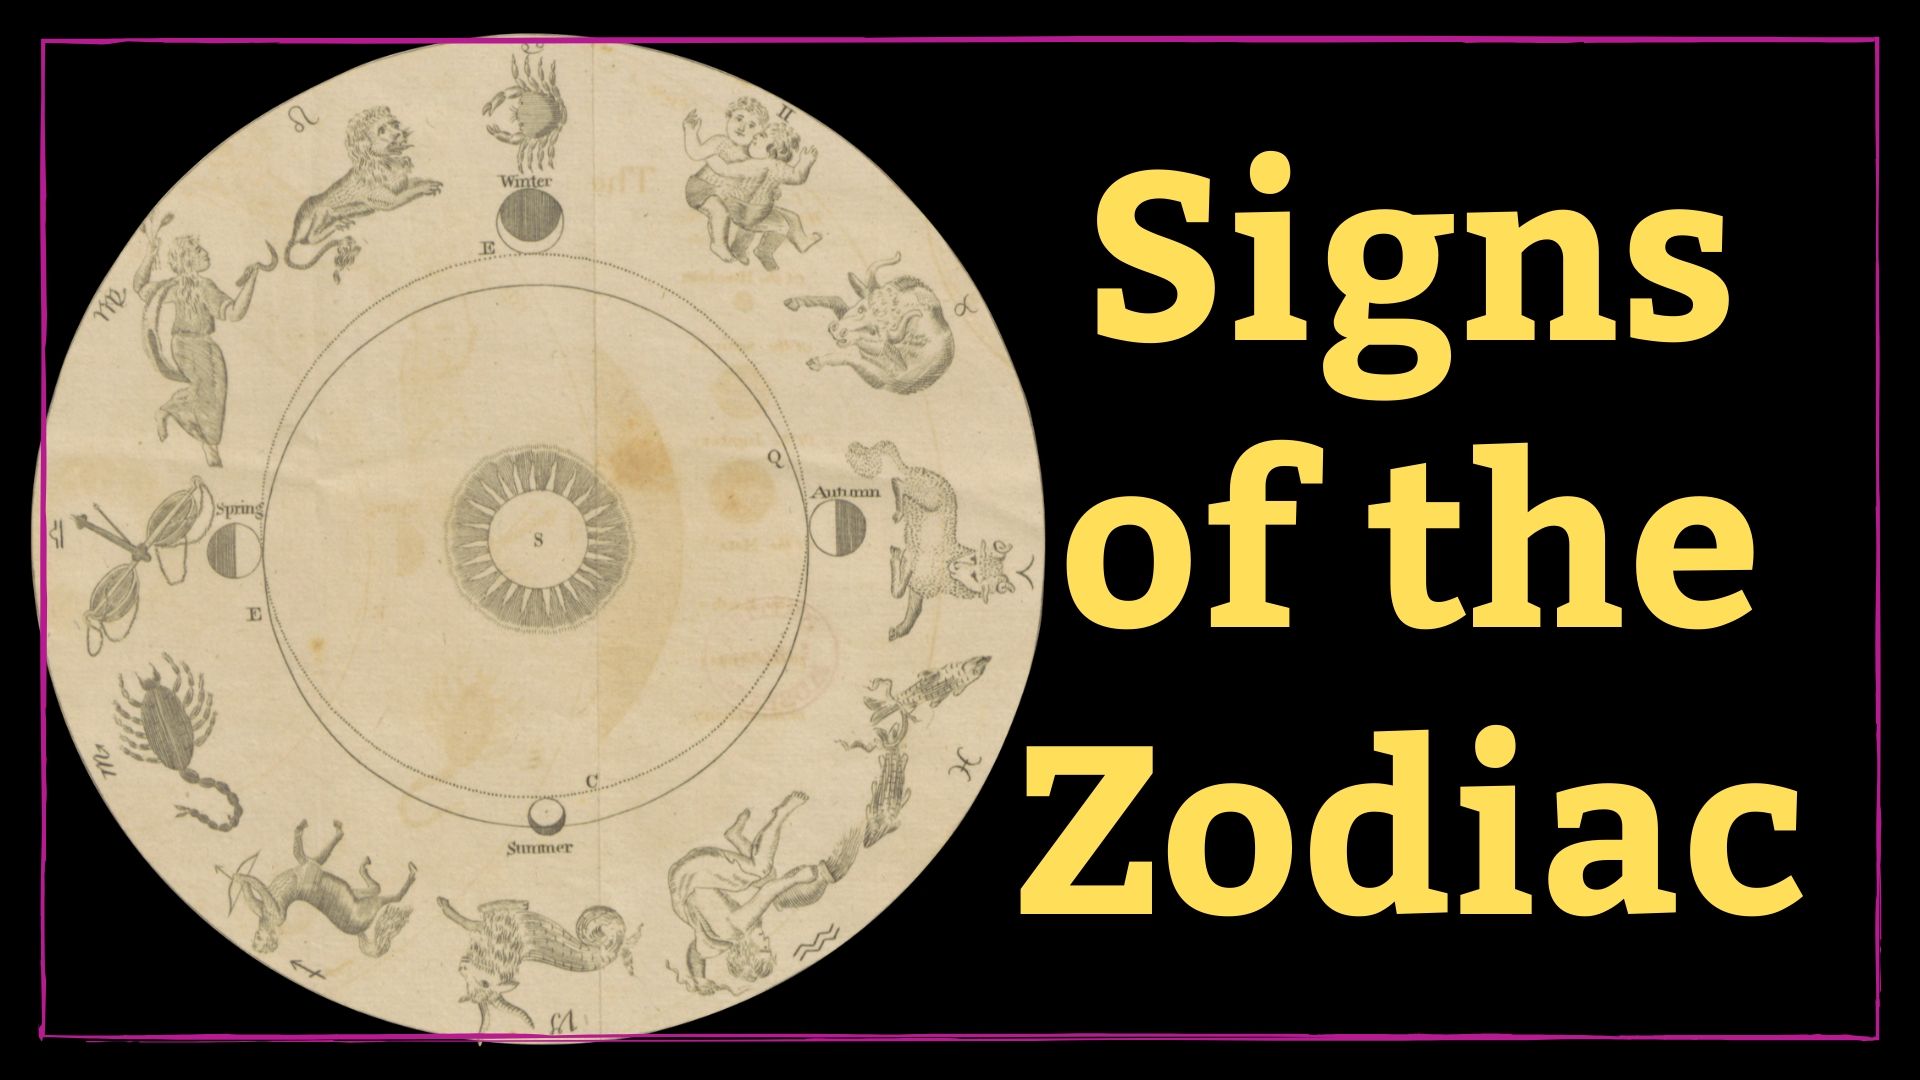 zodiac astrology